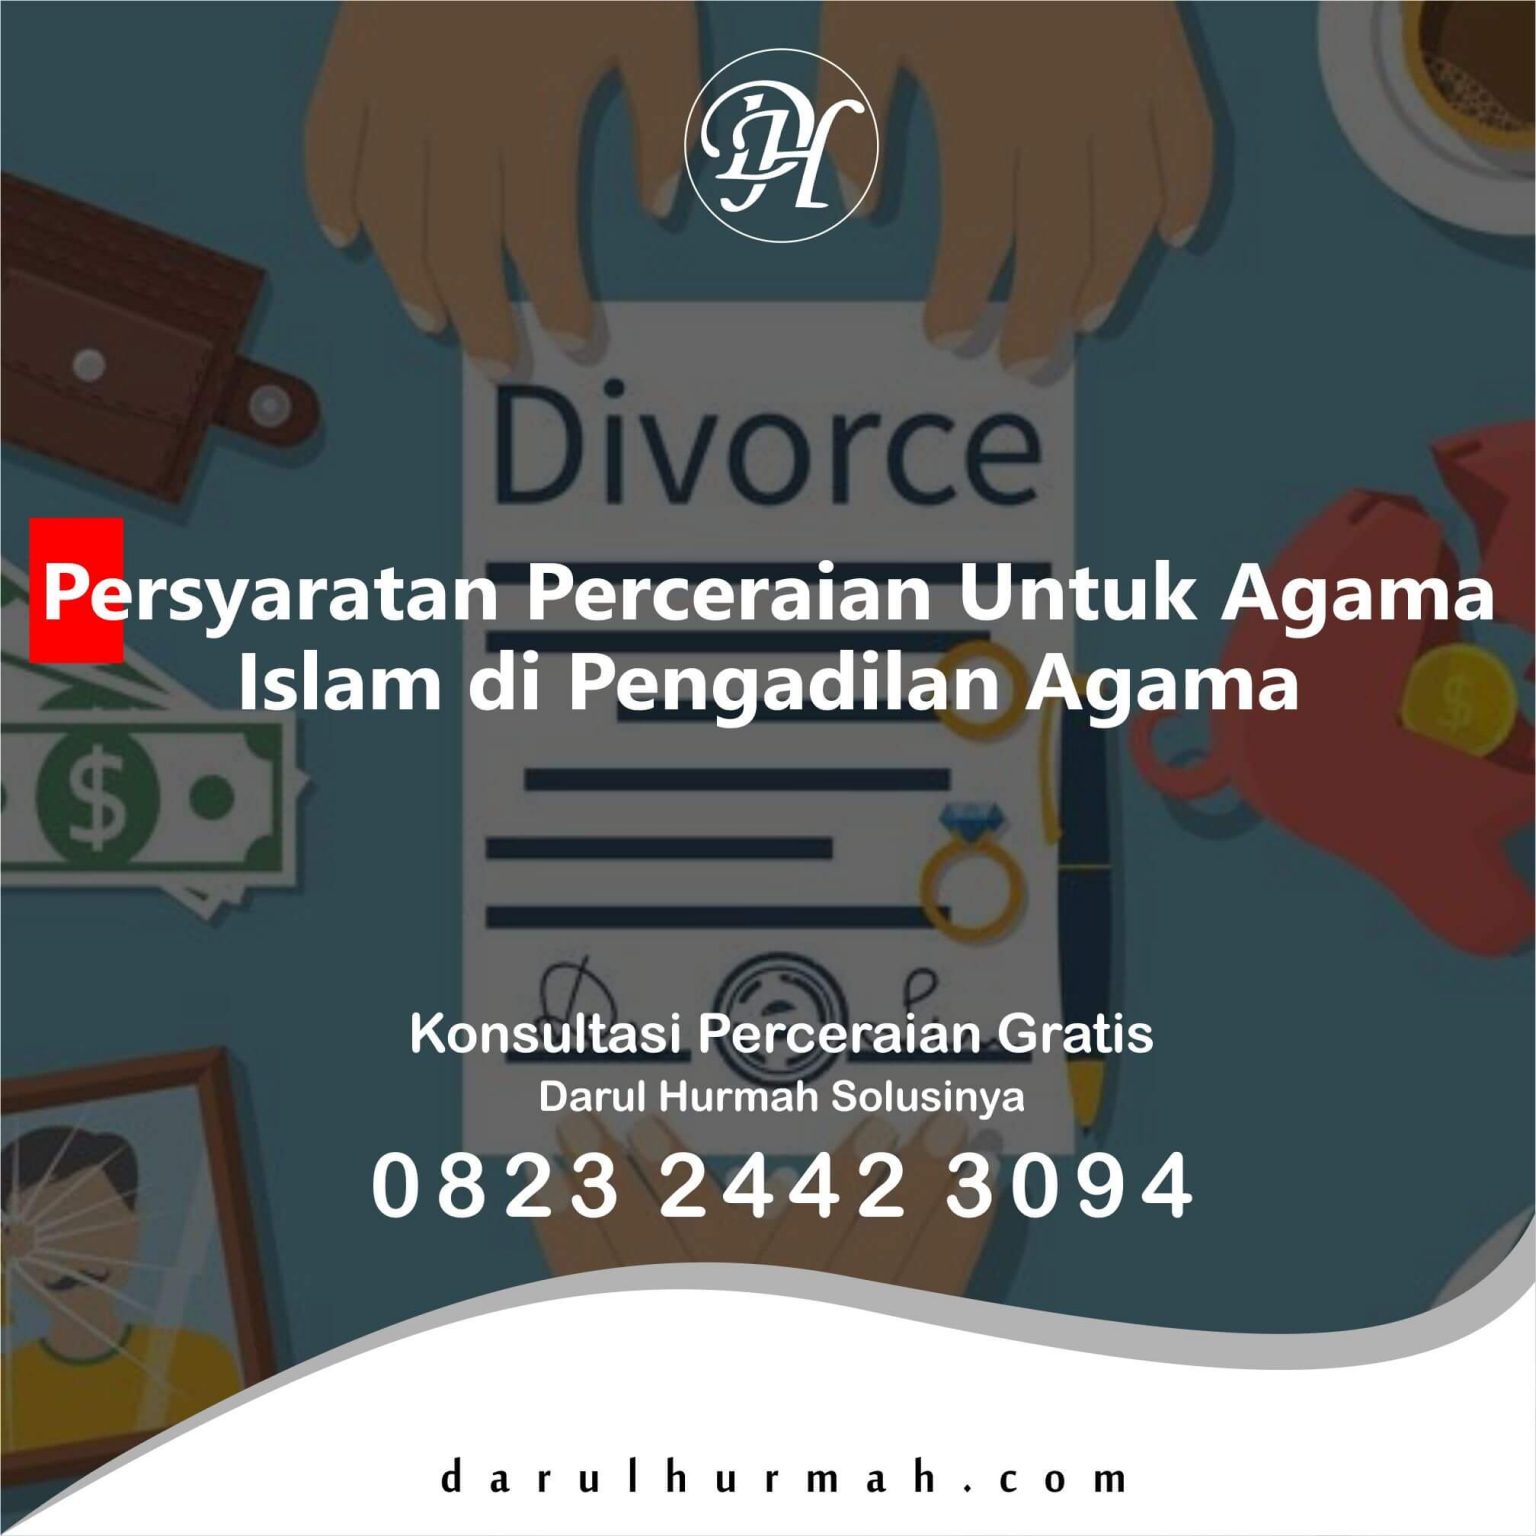 Persyaratan Perceraian Untuk Agama Islam di Pengadilan Agama